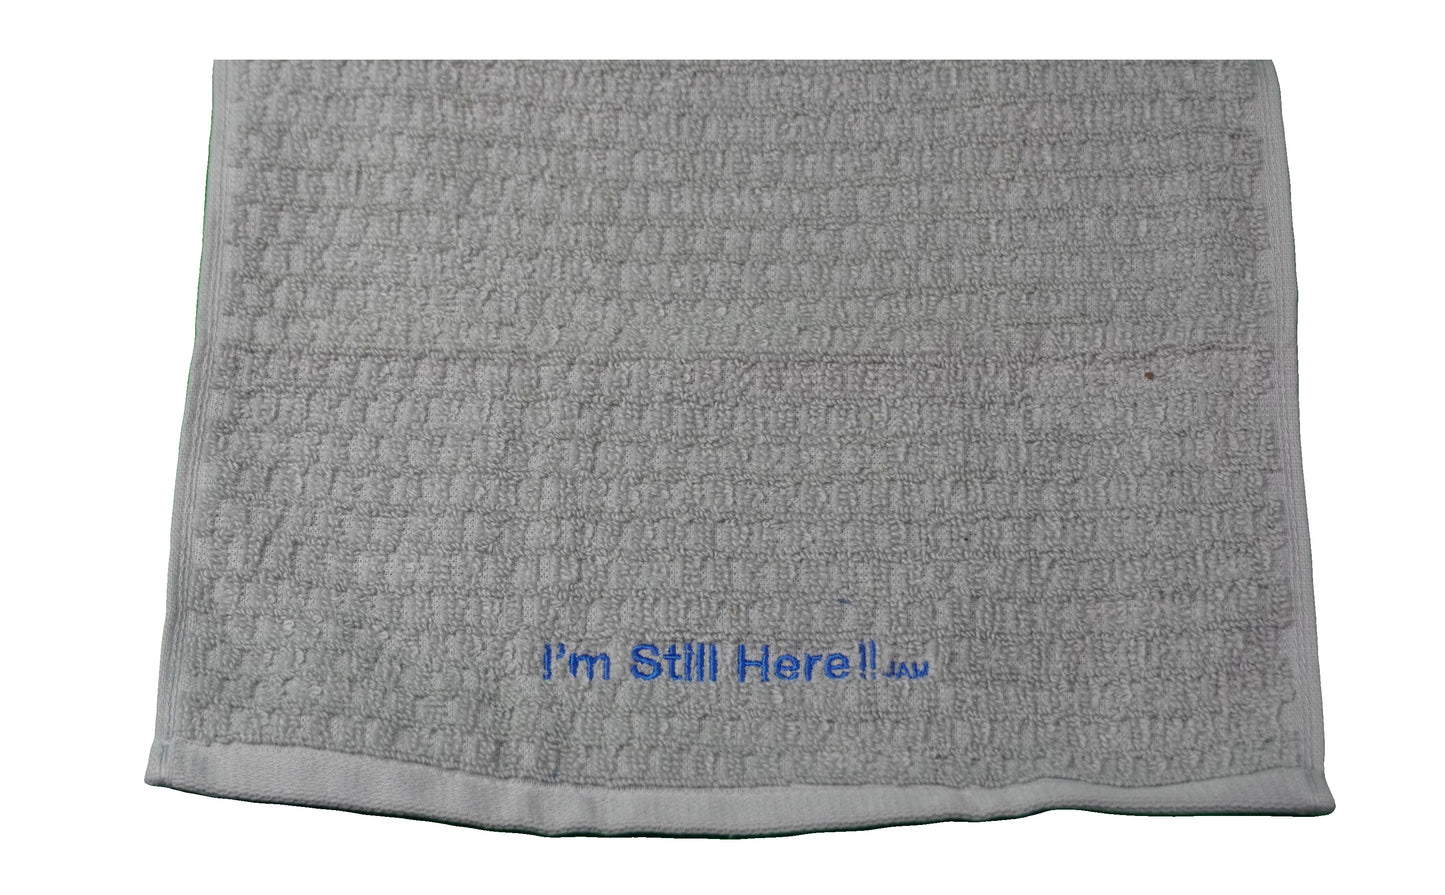 Sweat Towels ~ "I'm Still Here ! "